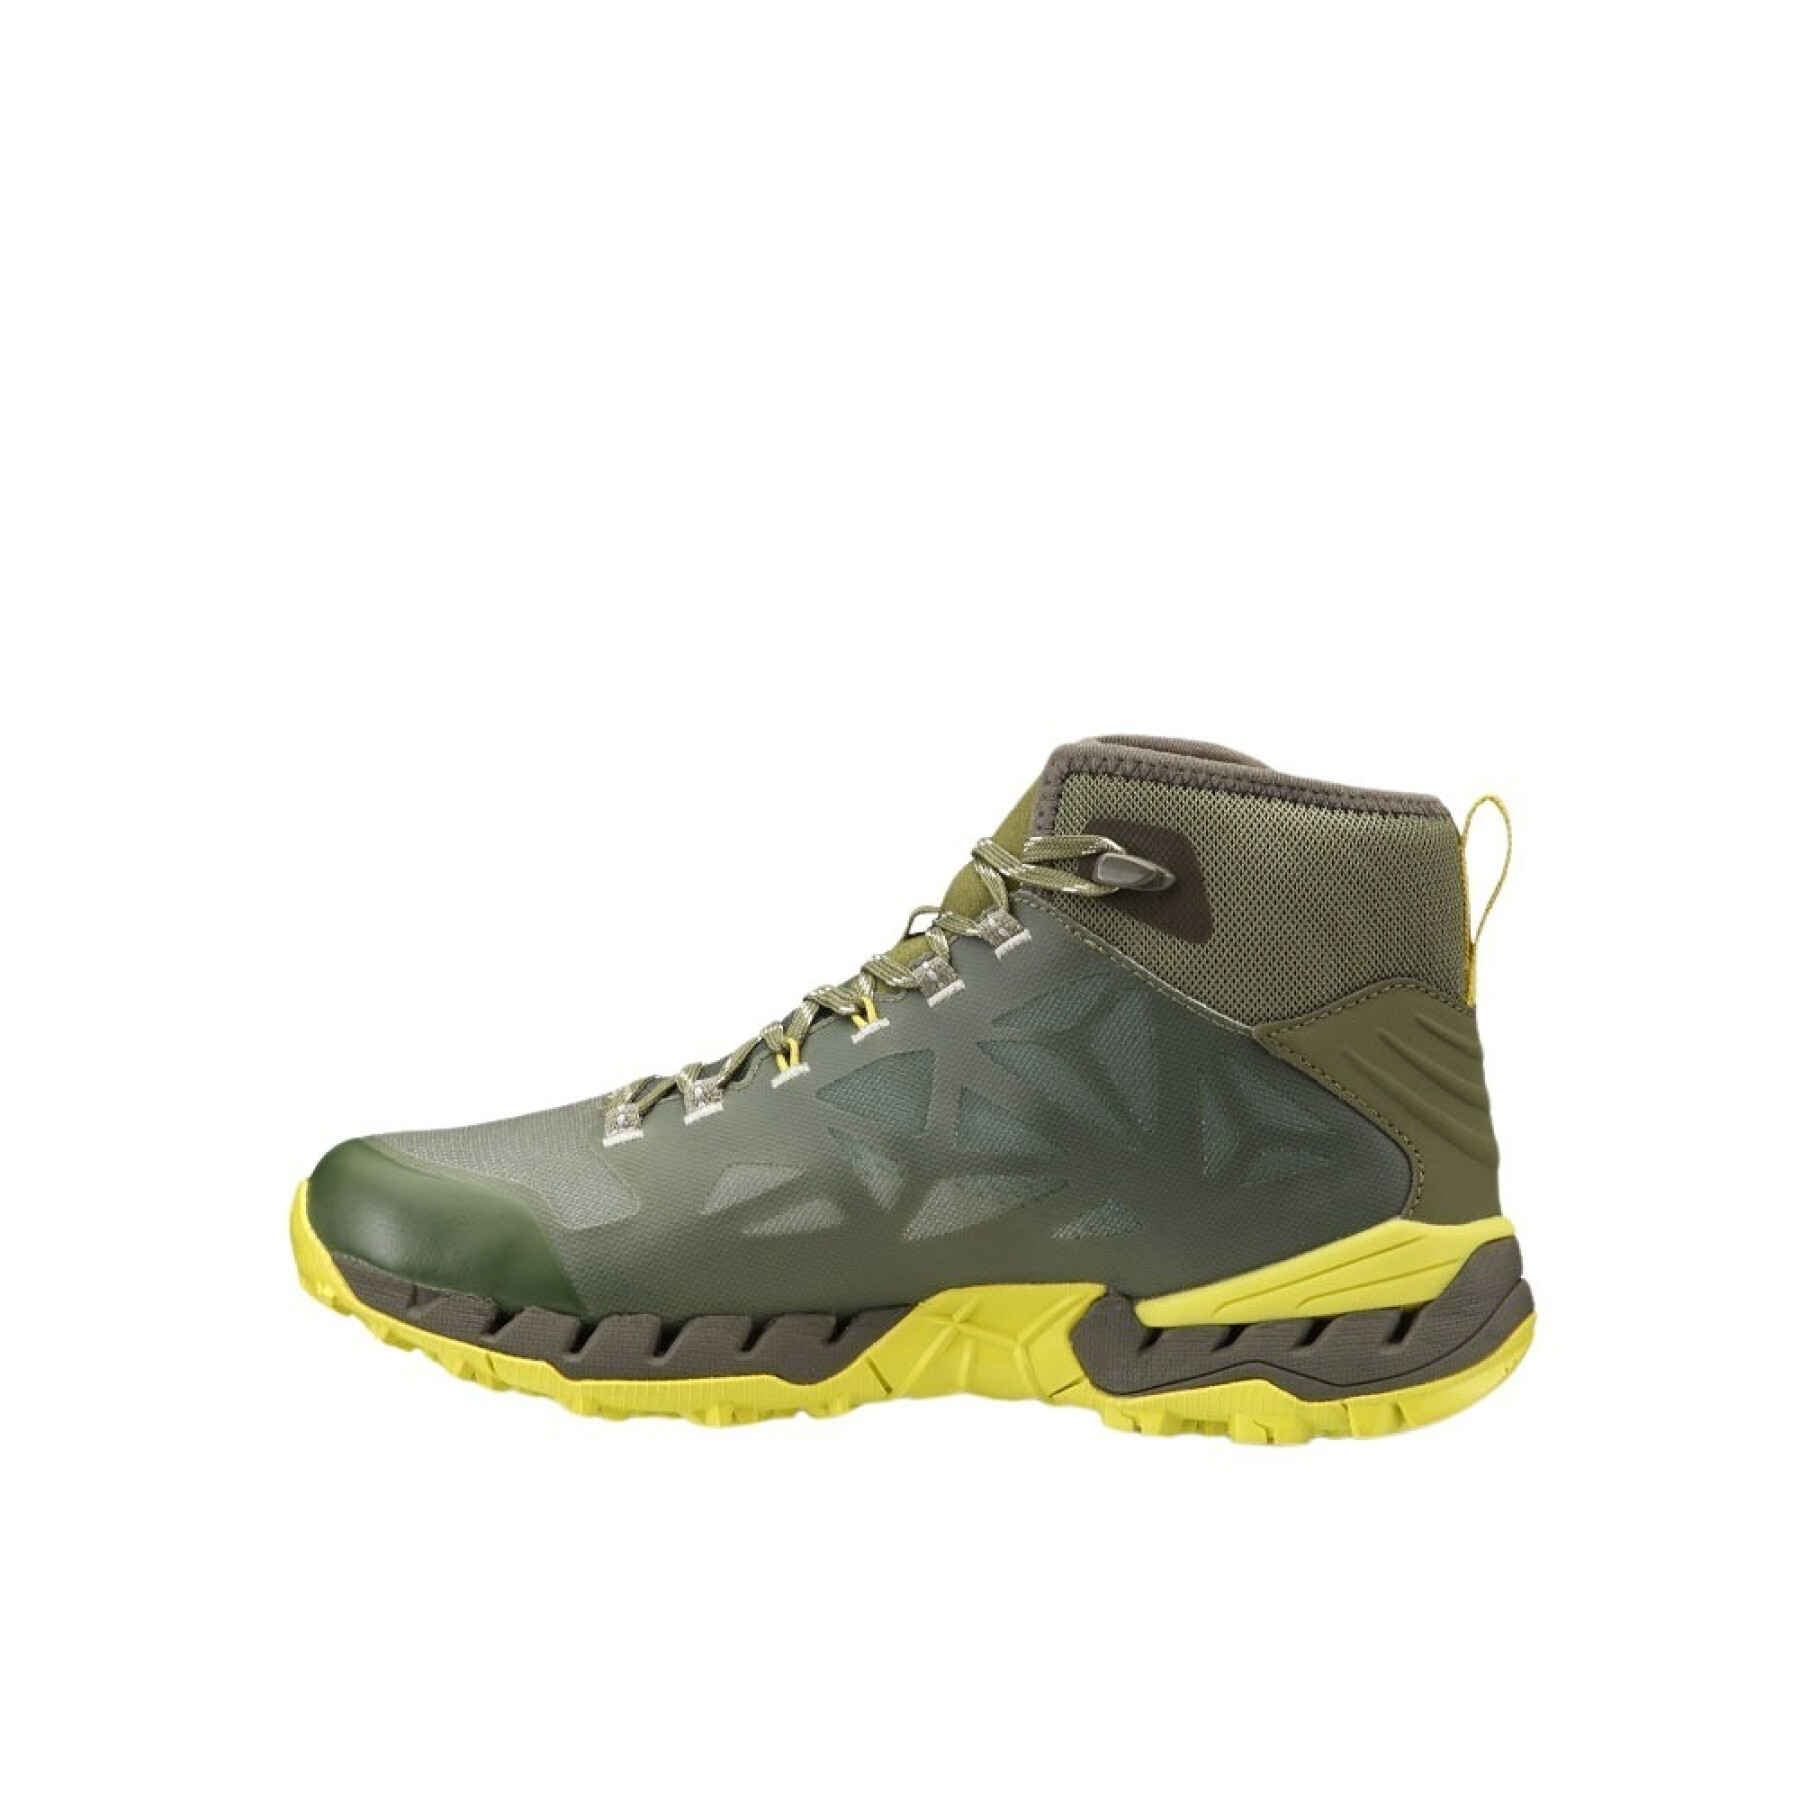 Mid hiking shoes Garmont 9.81 N Air G 2.0 GTX